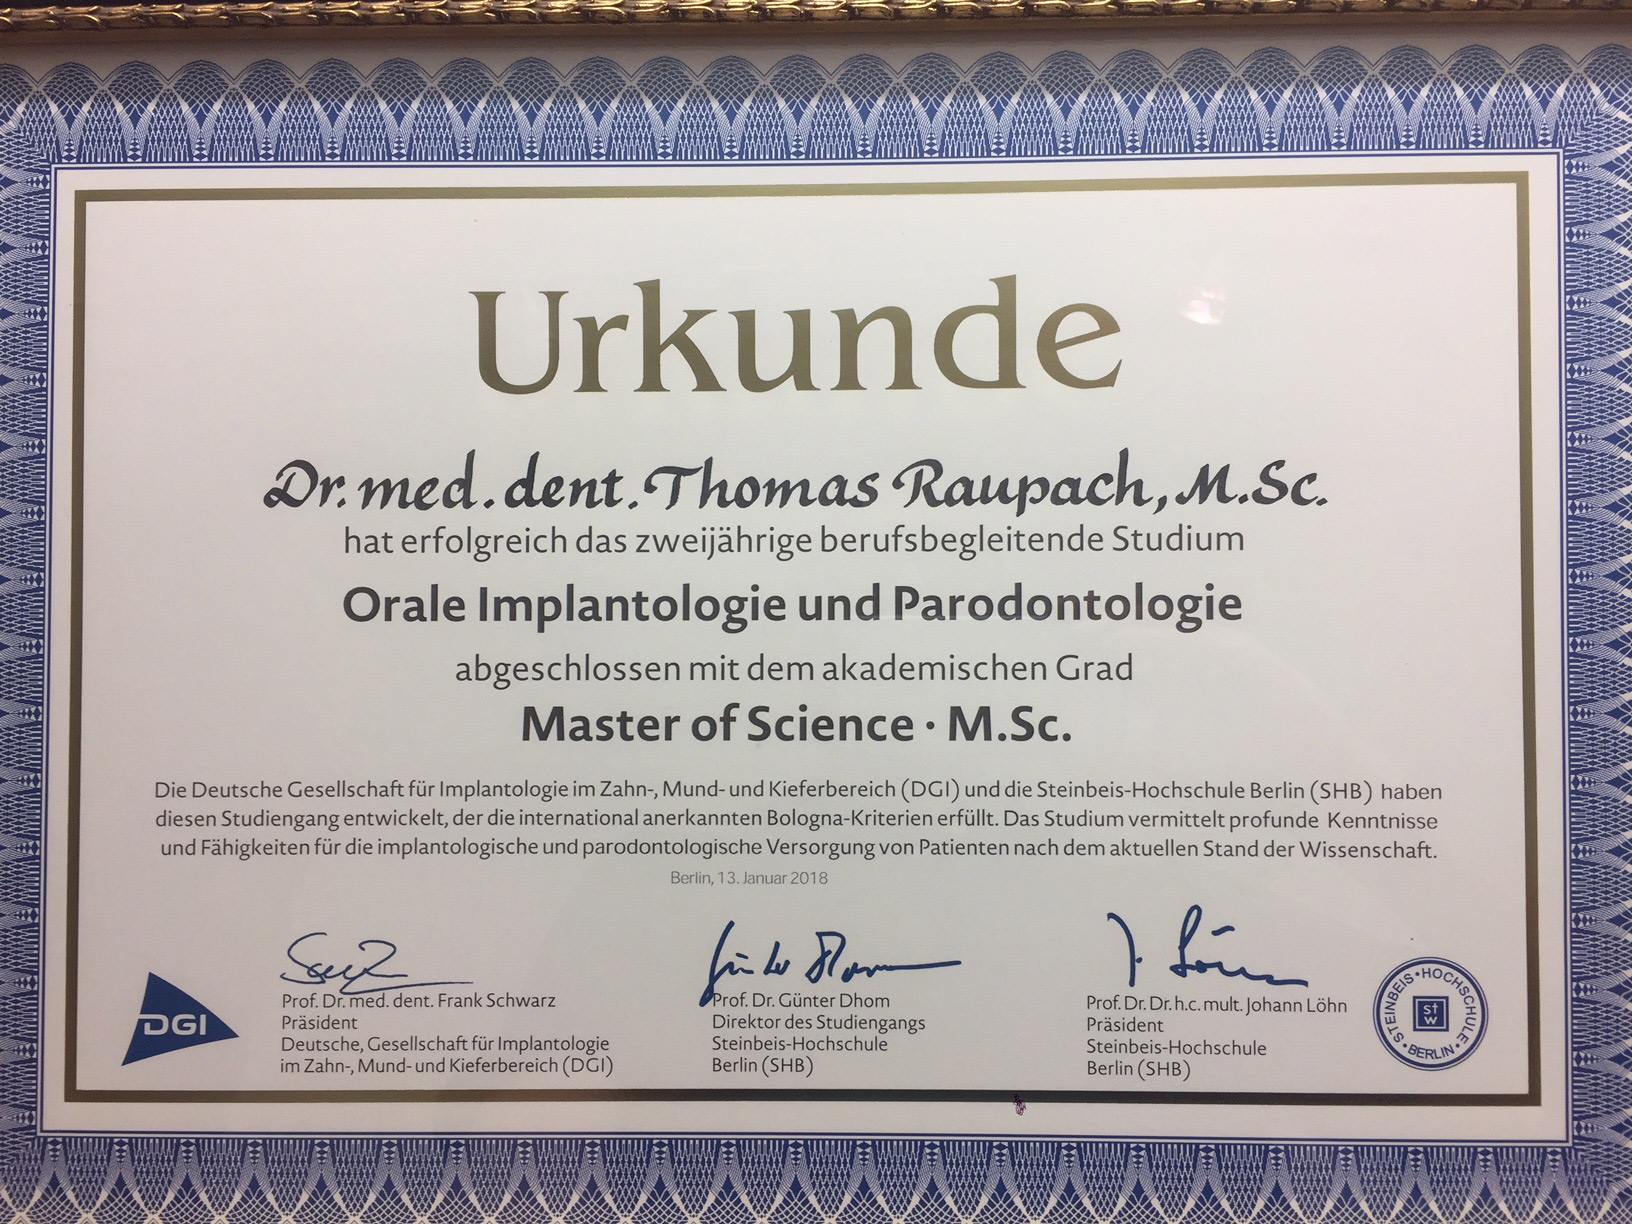 Master of Science Orlae Implantologie und Parodontologie